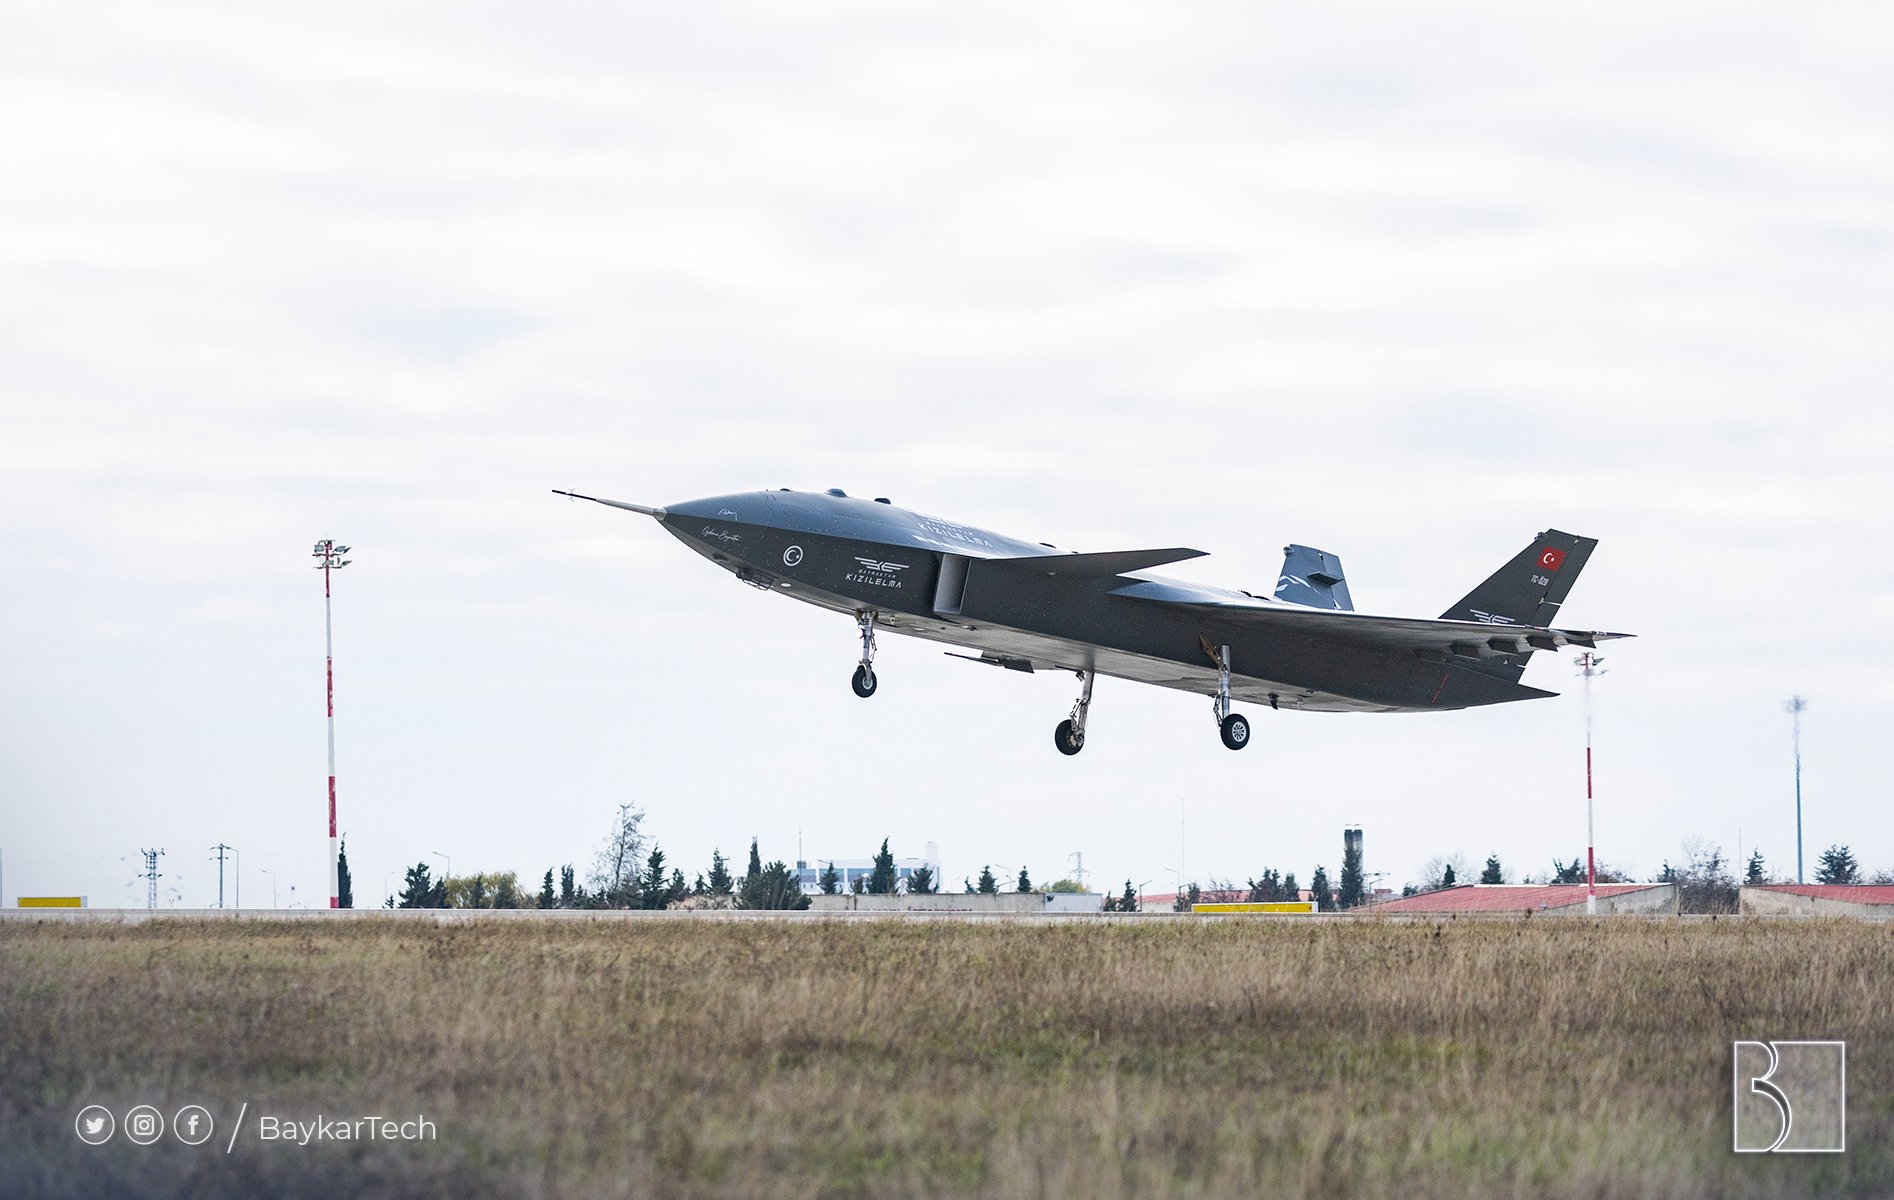 El UAV a reacción Bayraktar Kizilelma con motor ucraniano realizó su vuelo inaugural